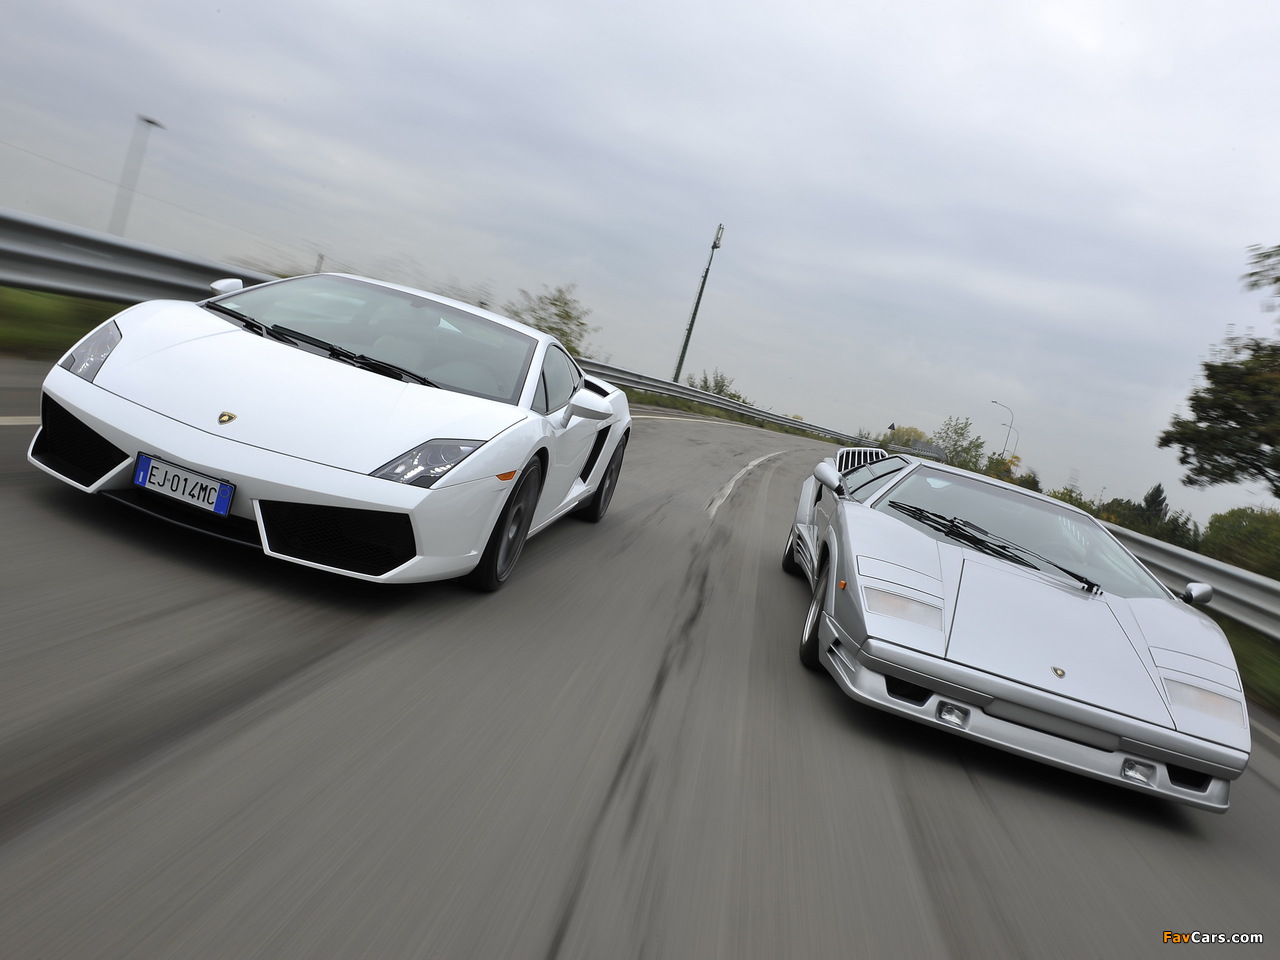 Pictures of Lamborghini (1280 x 960)